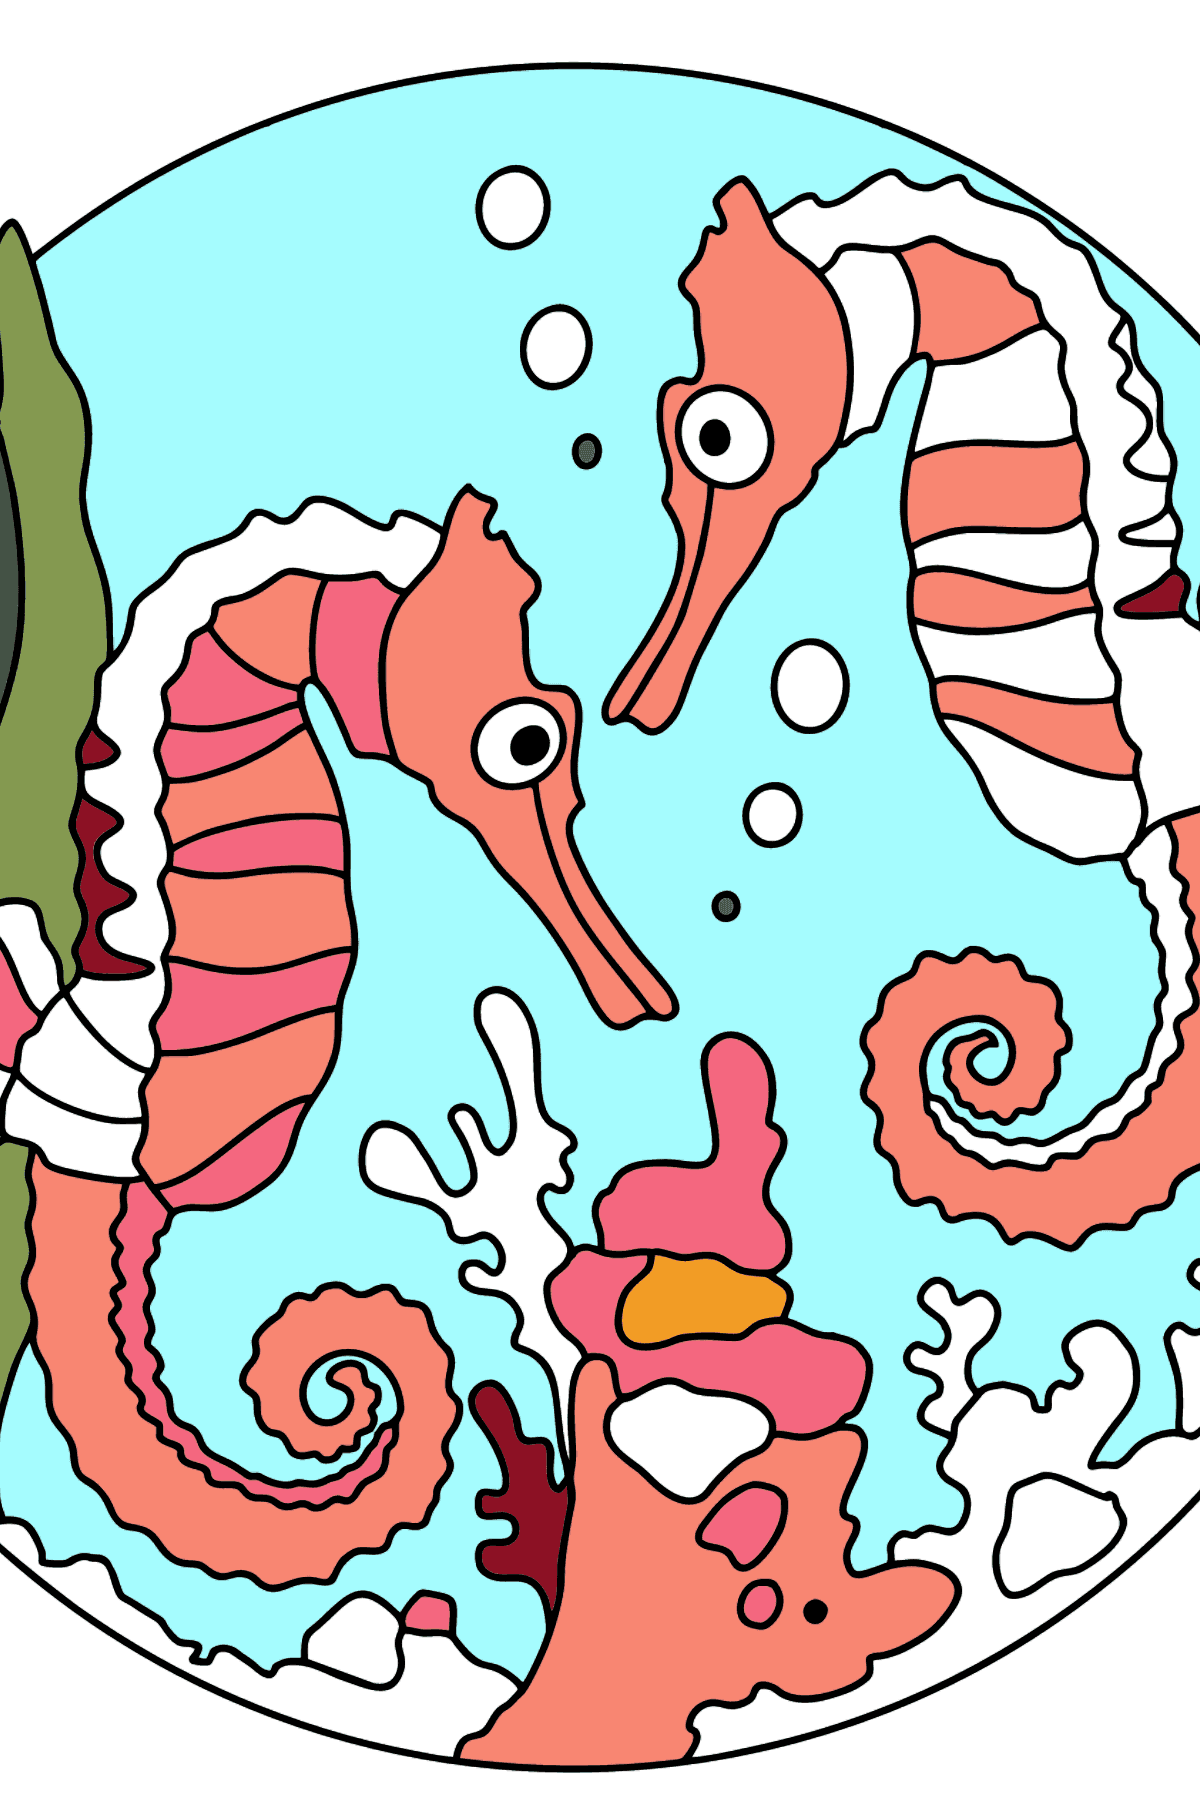 Раскраски морские коньки (сложно) - Картинки для Детей